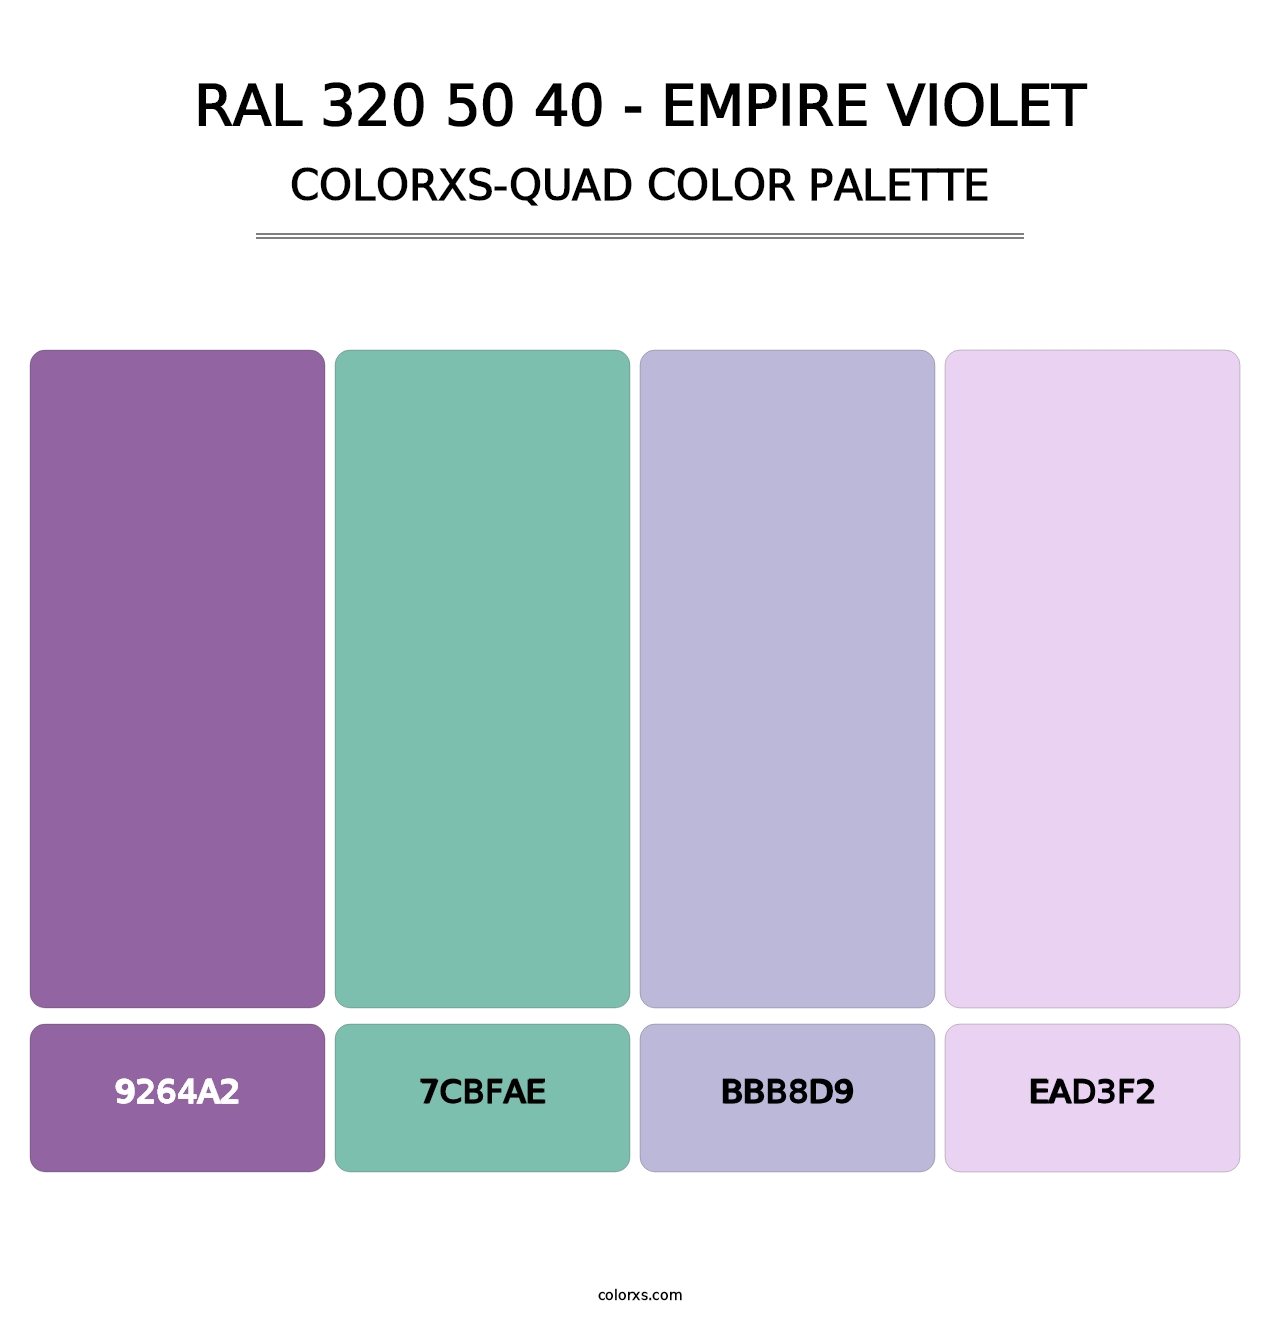 RAL 320 50 40 - Empire Violet - Colorxs Quad Palette